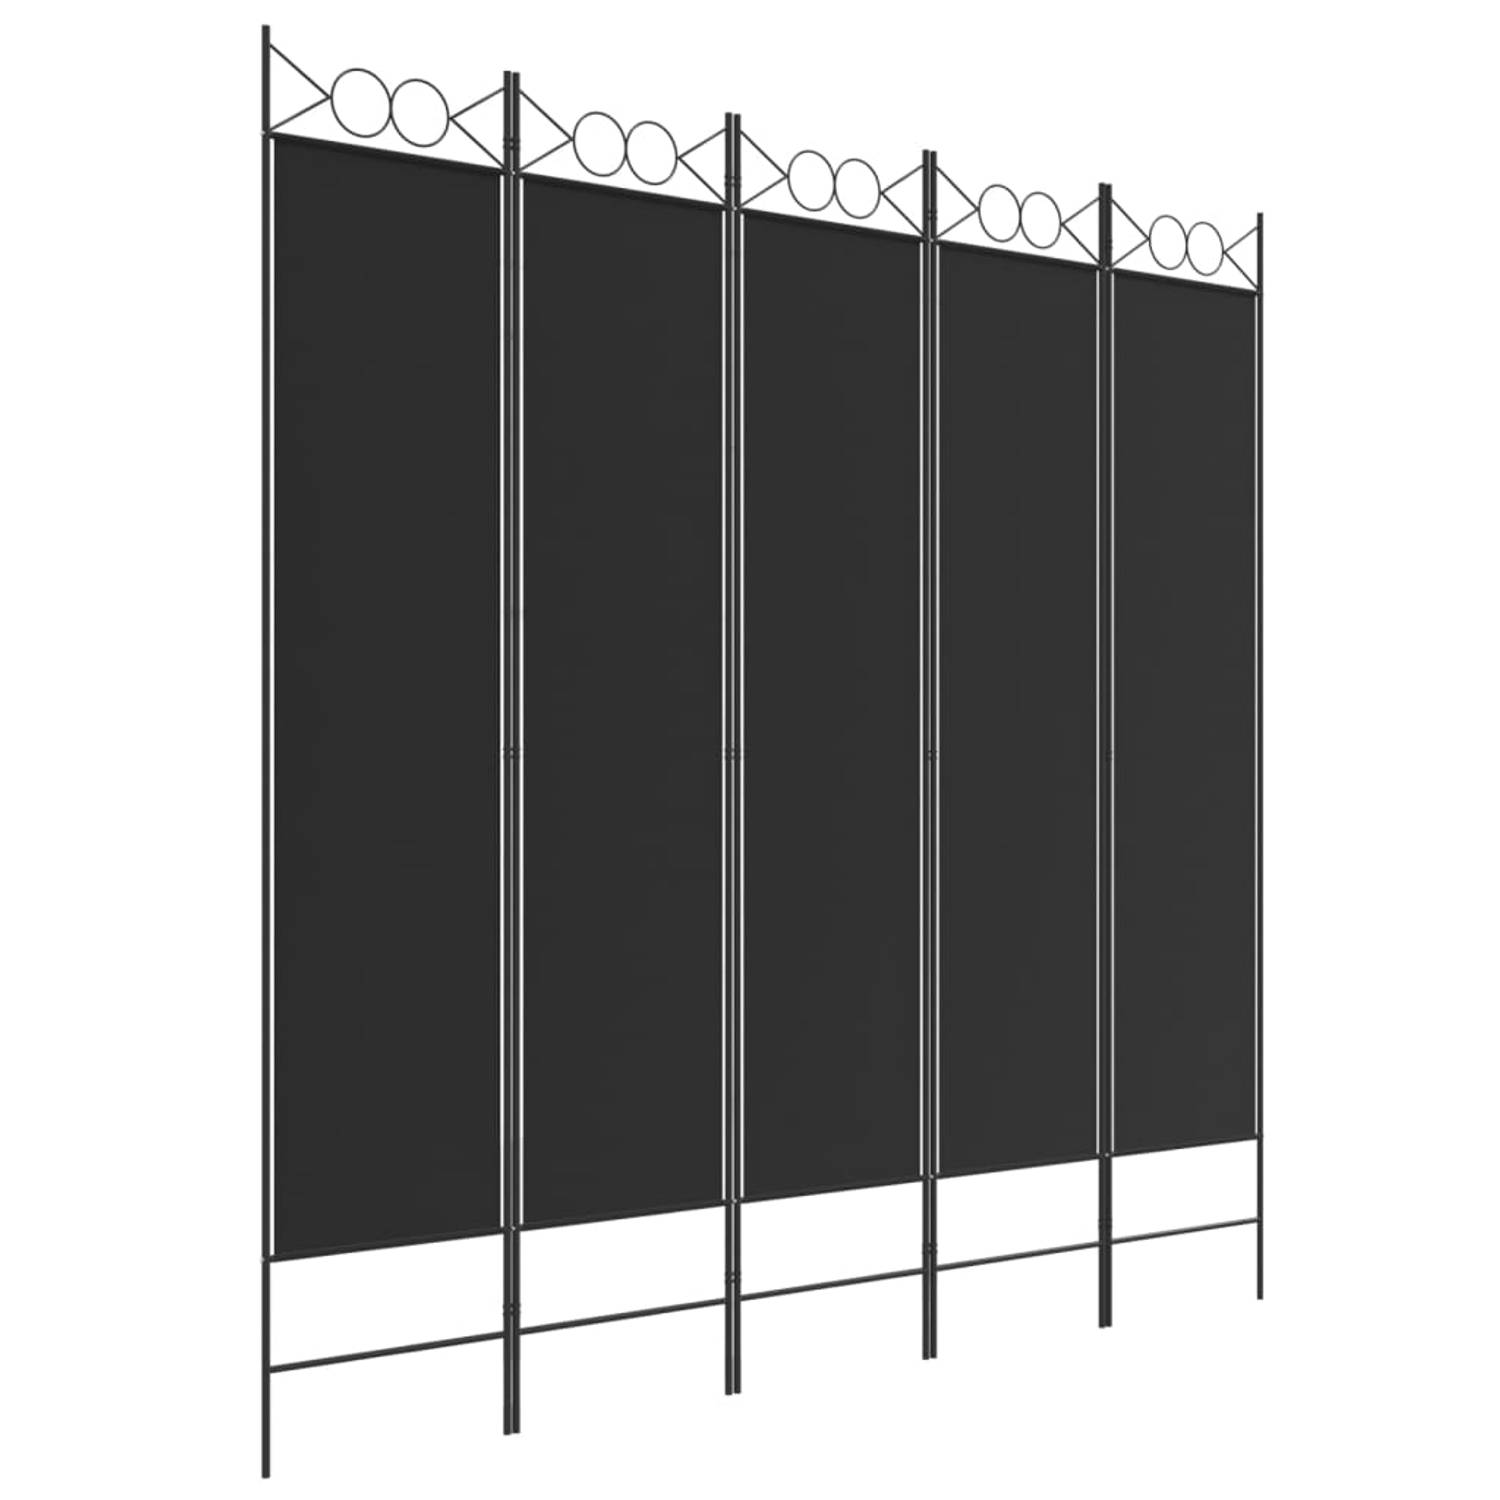 The Living Store Kamerscherm - 5 panelen - 200x200 cm - Zwart polyester stof - Duurzaam en inklapbaar